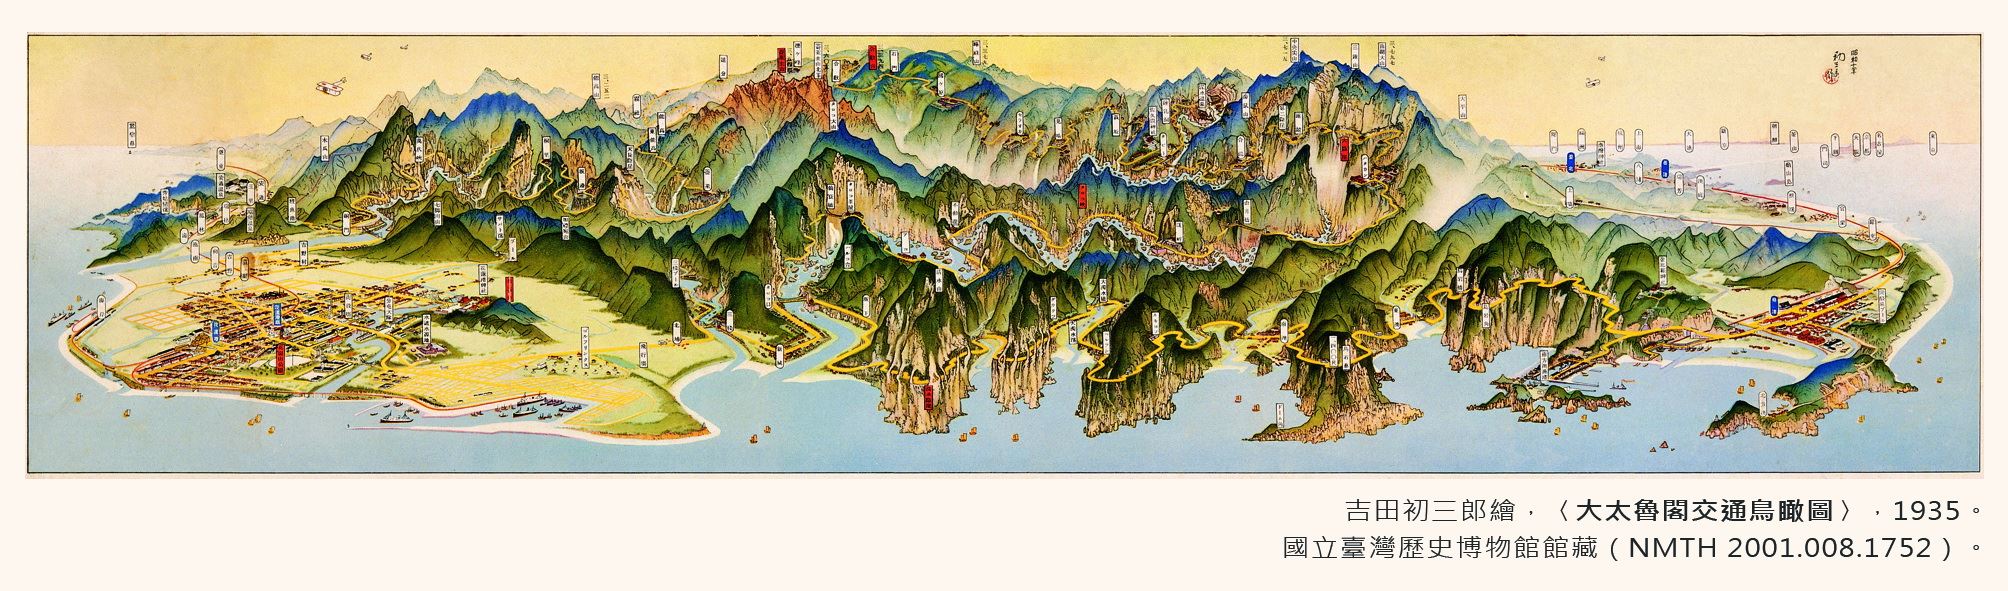 地圖書籤8(1935年-太魯閣)-正